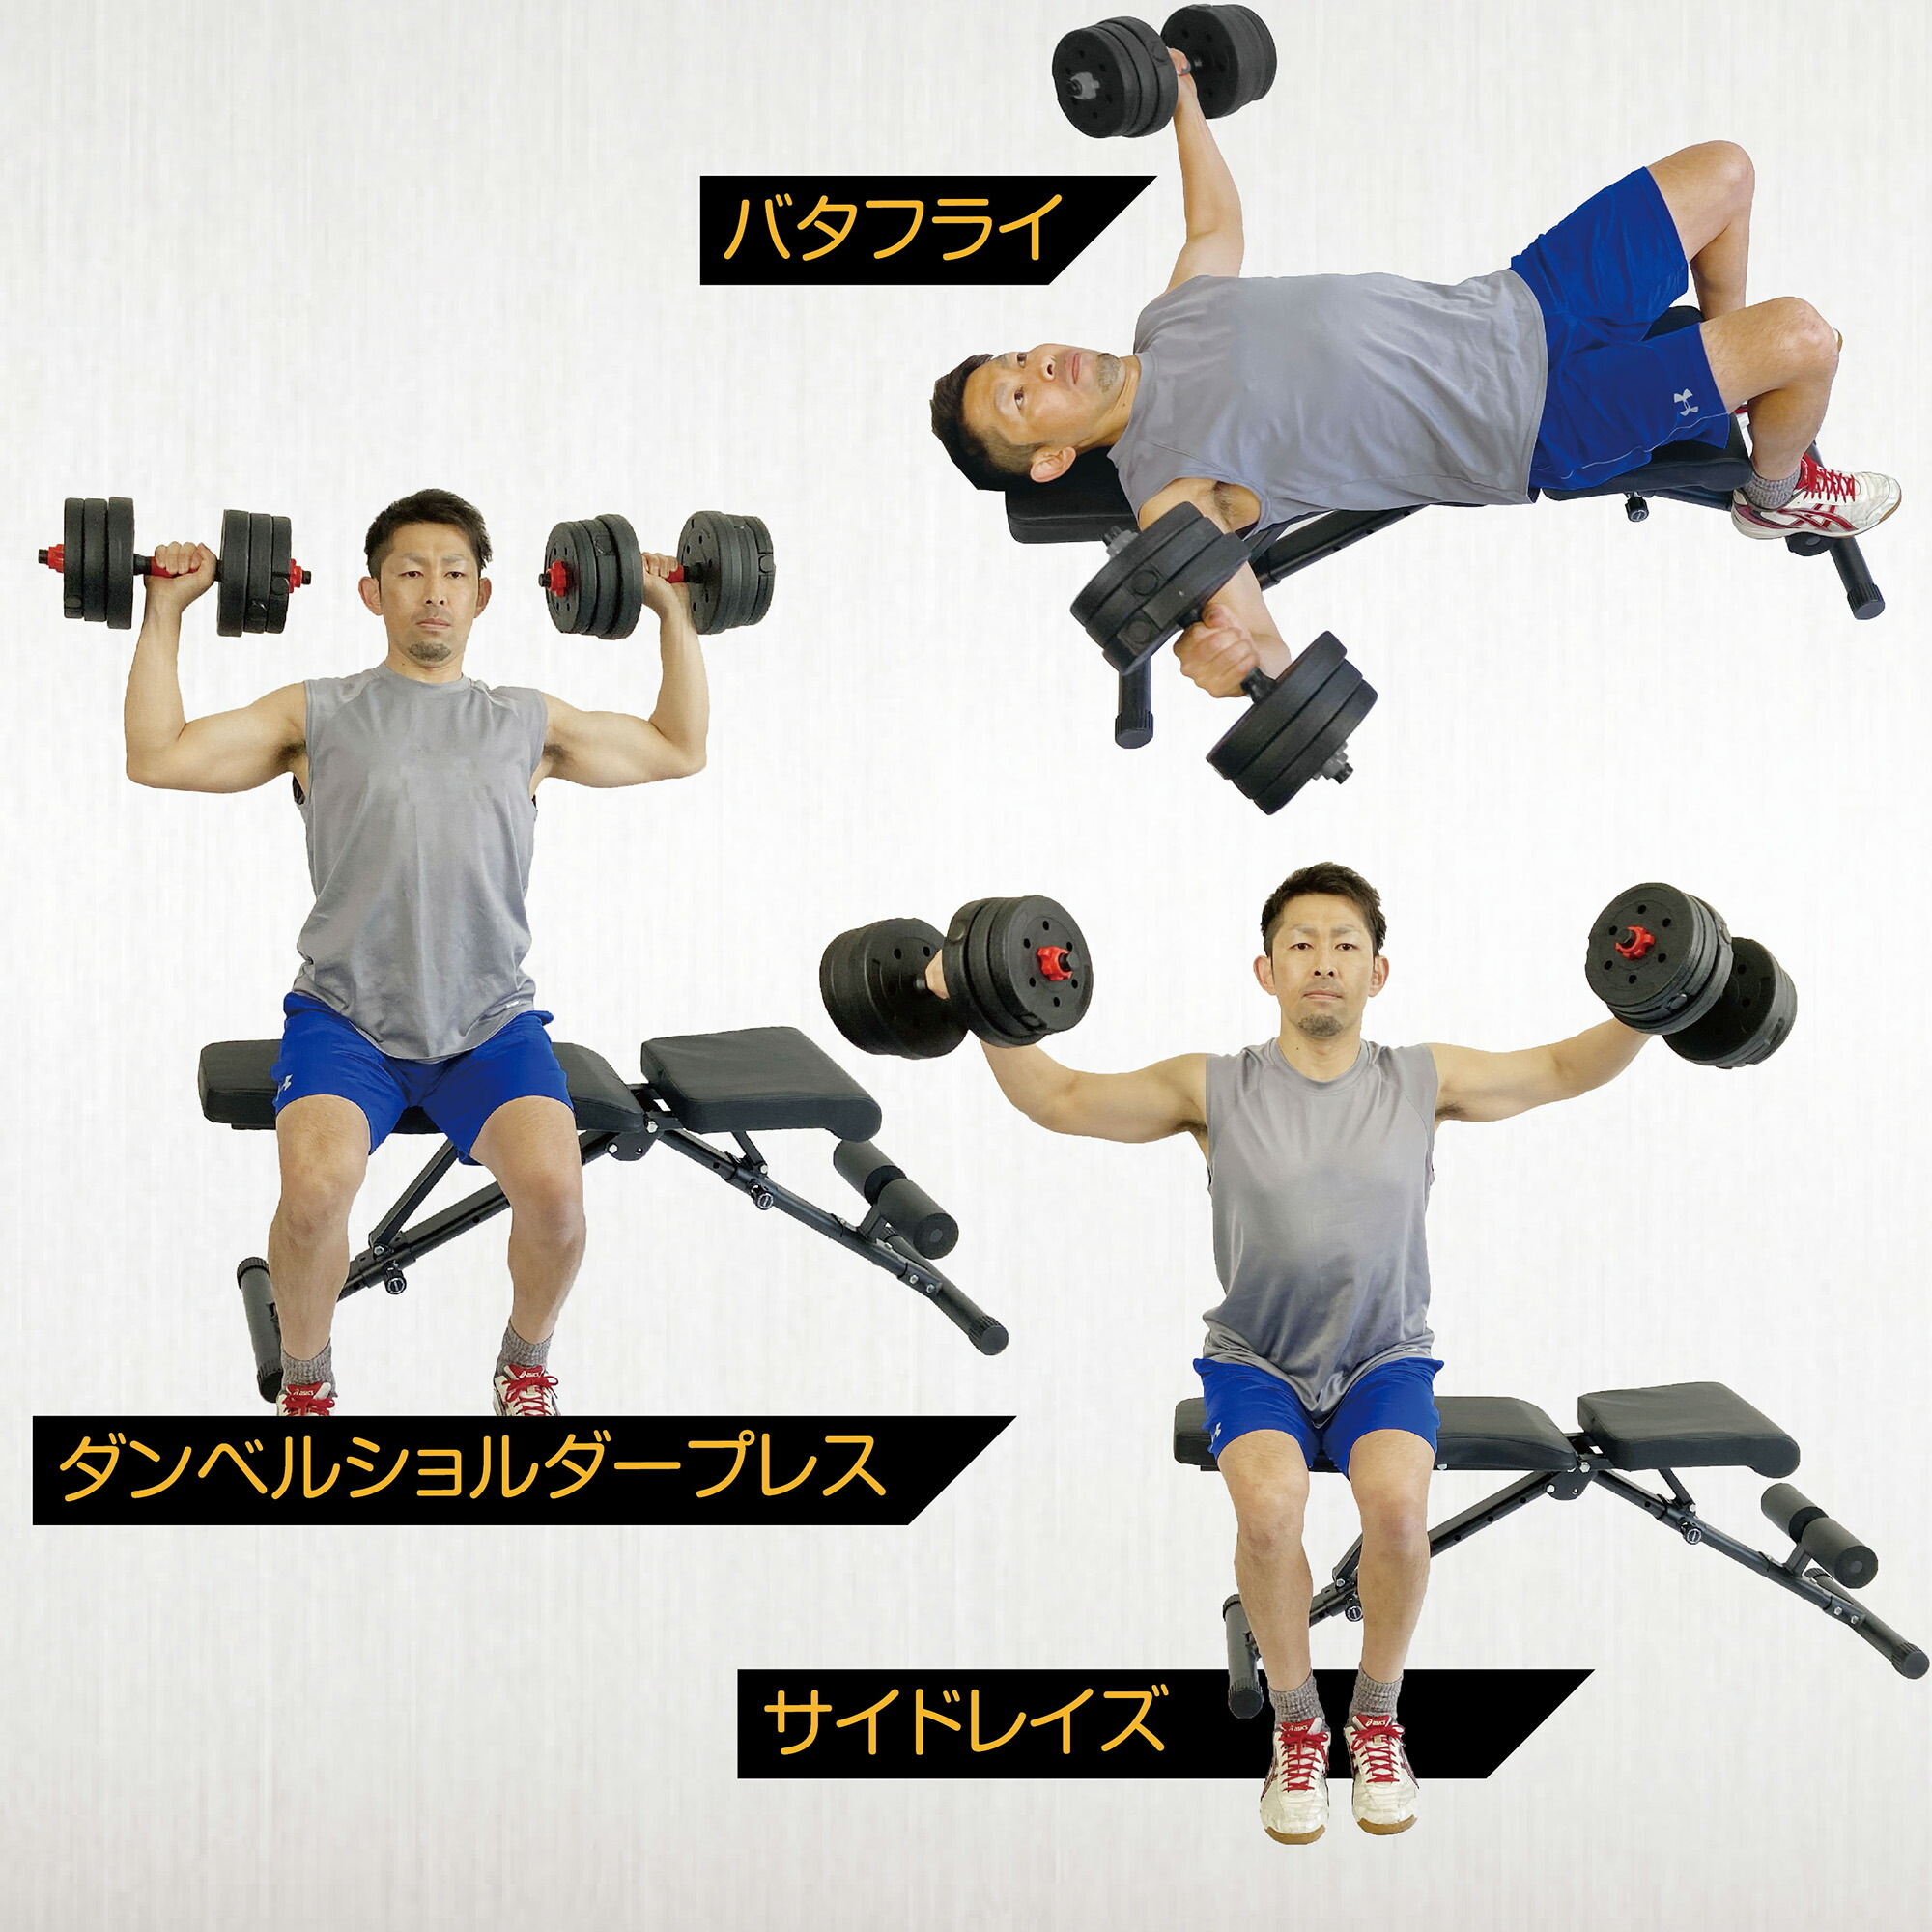 ダンベル 可変式 40kg (20kg×2個) セット 筋トレ トレーニング 